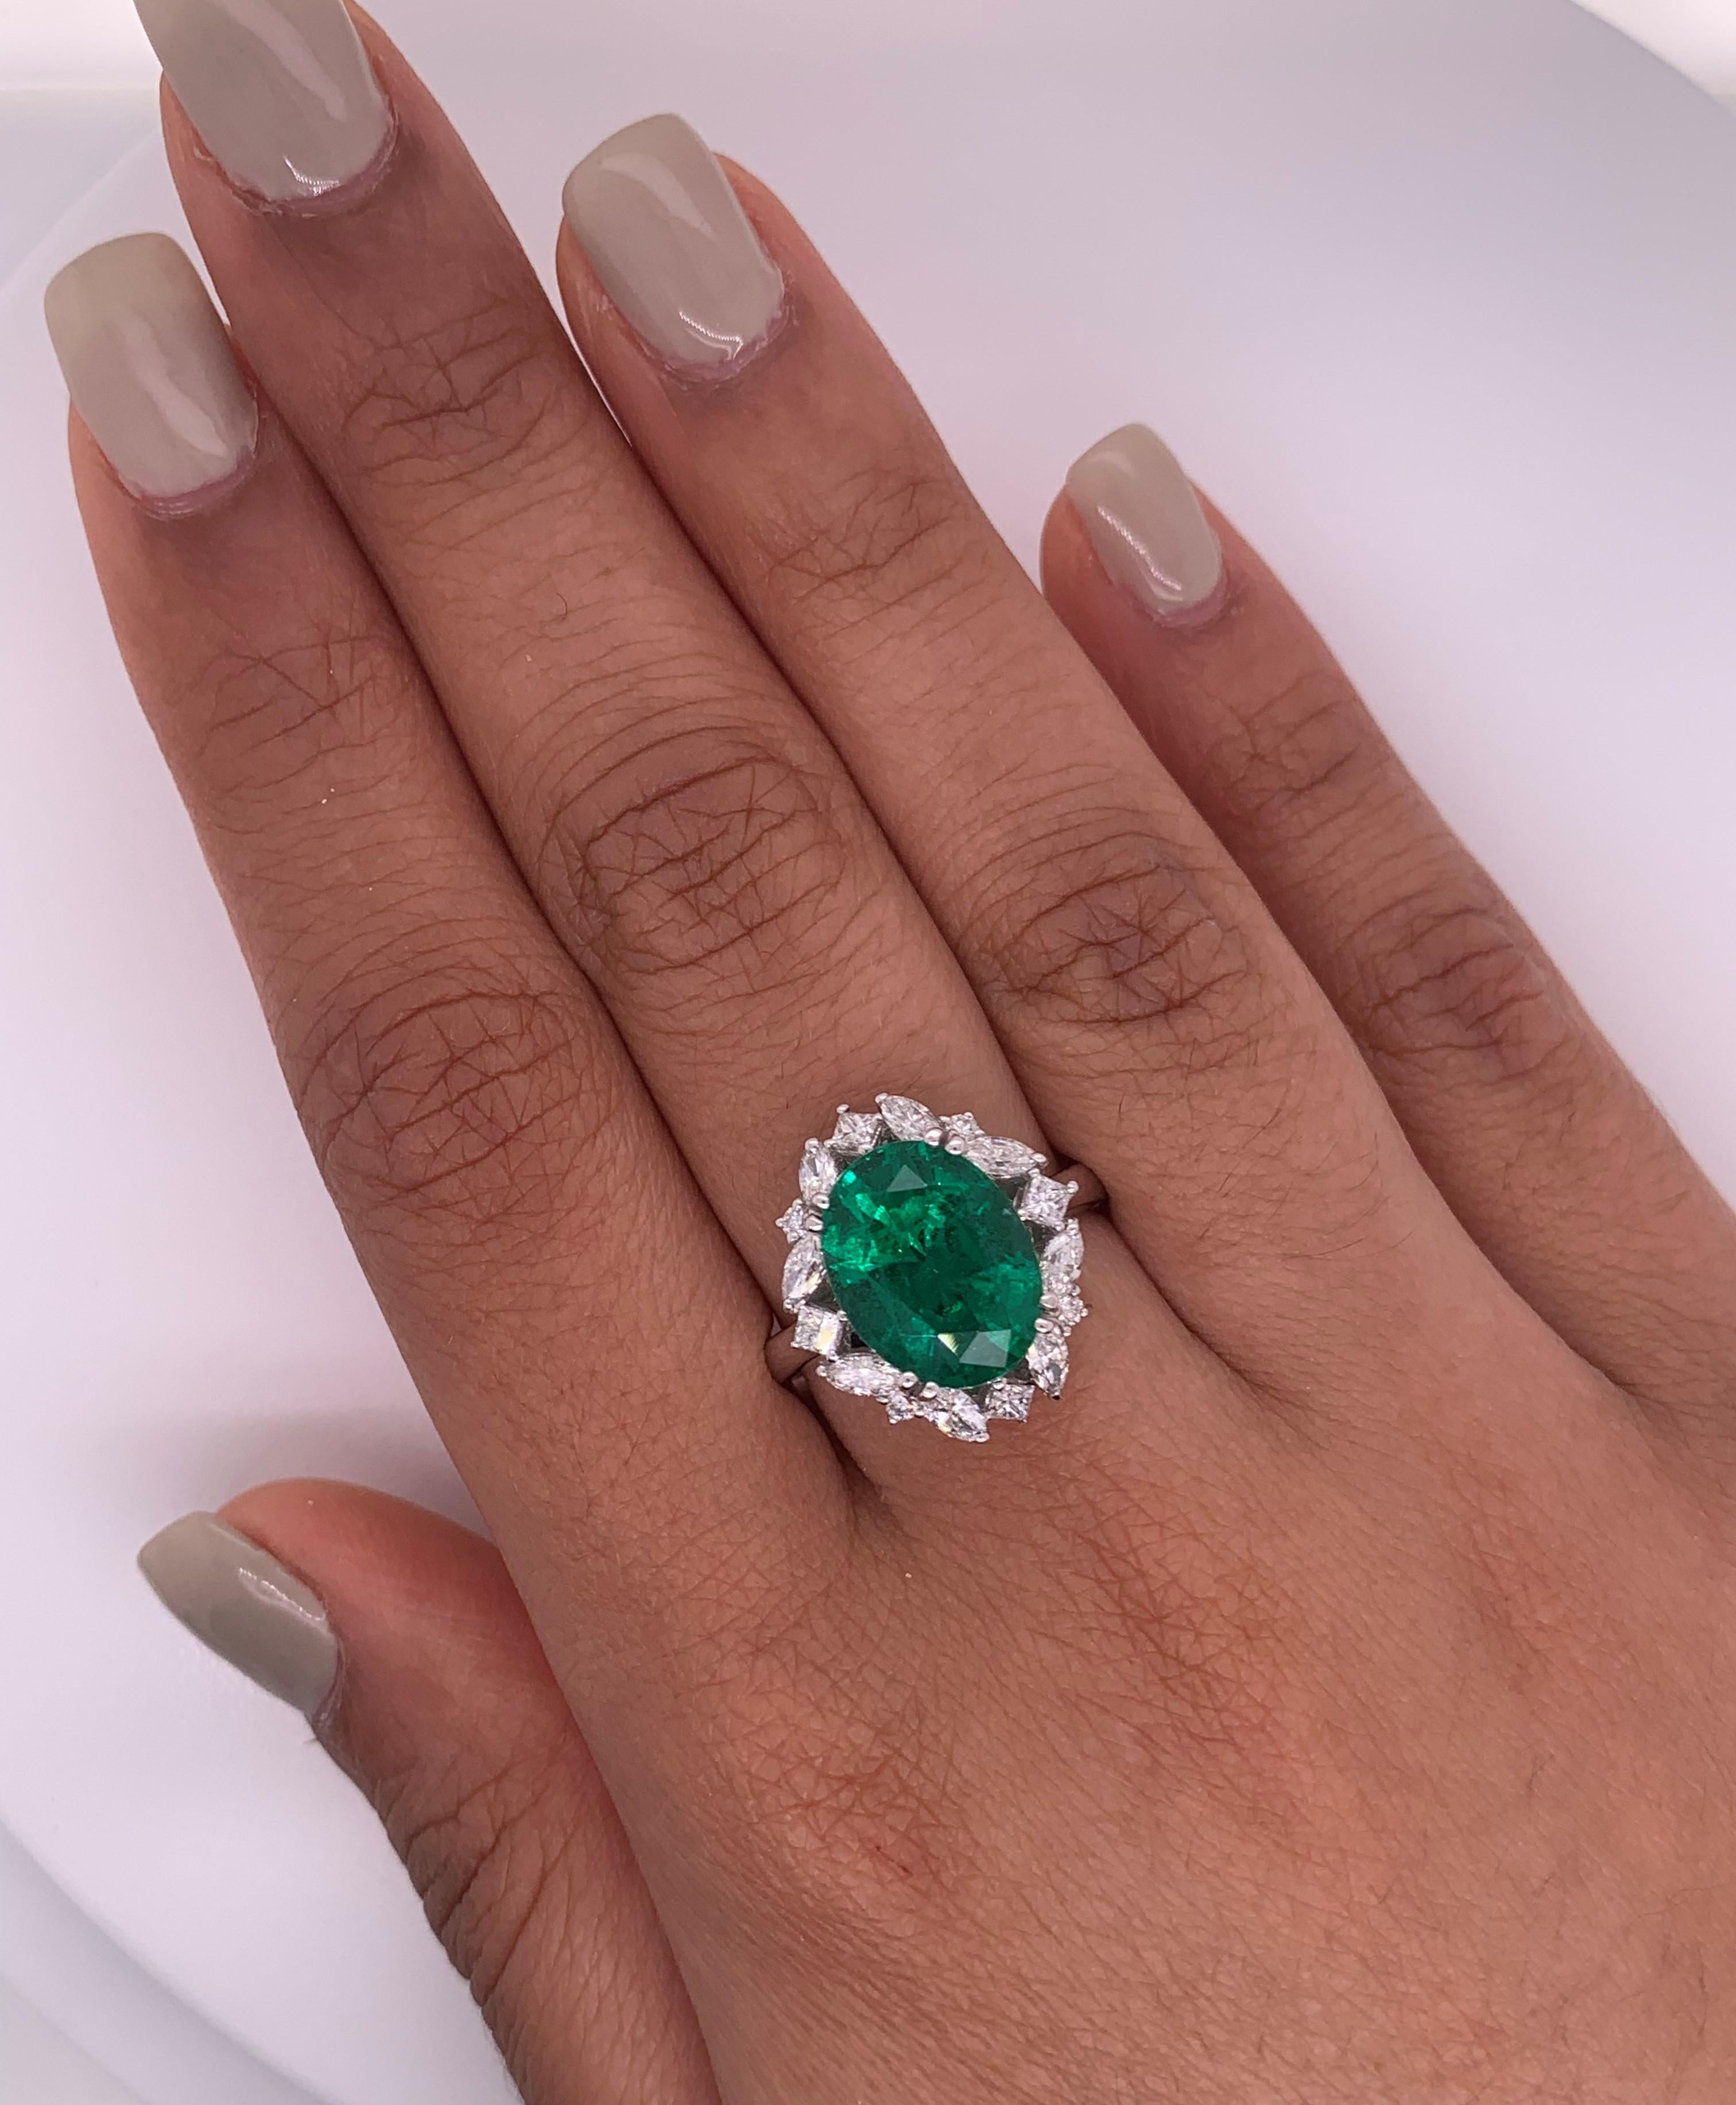 Sunita Nahata präsentiert die lebhaftesten Smaragde und Diamanten aus Kolumbien und Sambia und widmet diese Kollektion ihrer Heimatstadt Jaipur, wo die Schmuckindustrie bis in die frühen 1700er Jahre zurückreicht. Jaipur ist auch ein Epizentrum für